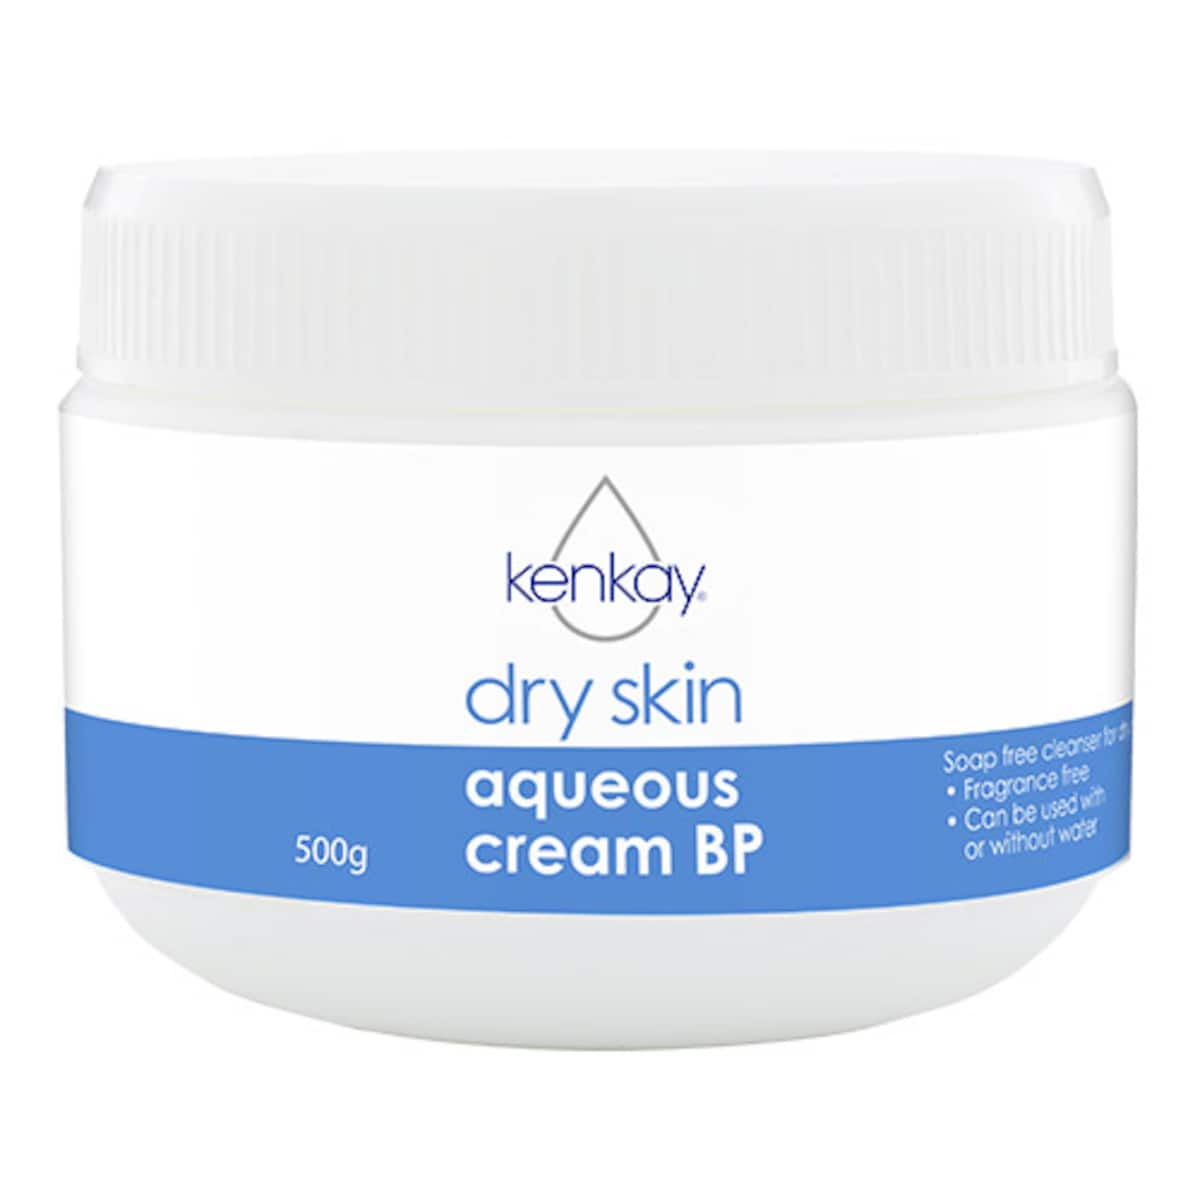 Kenkay Aqueous Cream B.P. Jar 500g